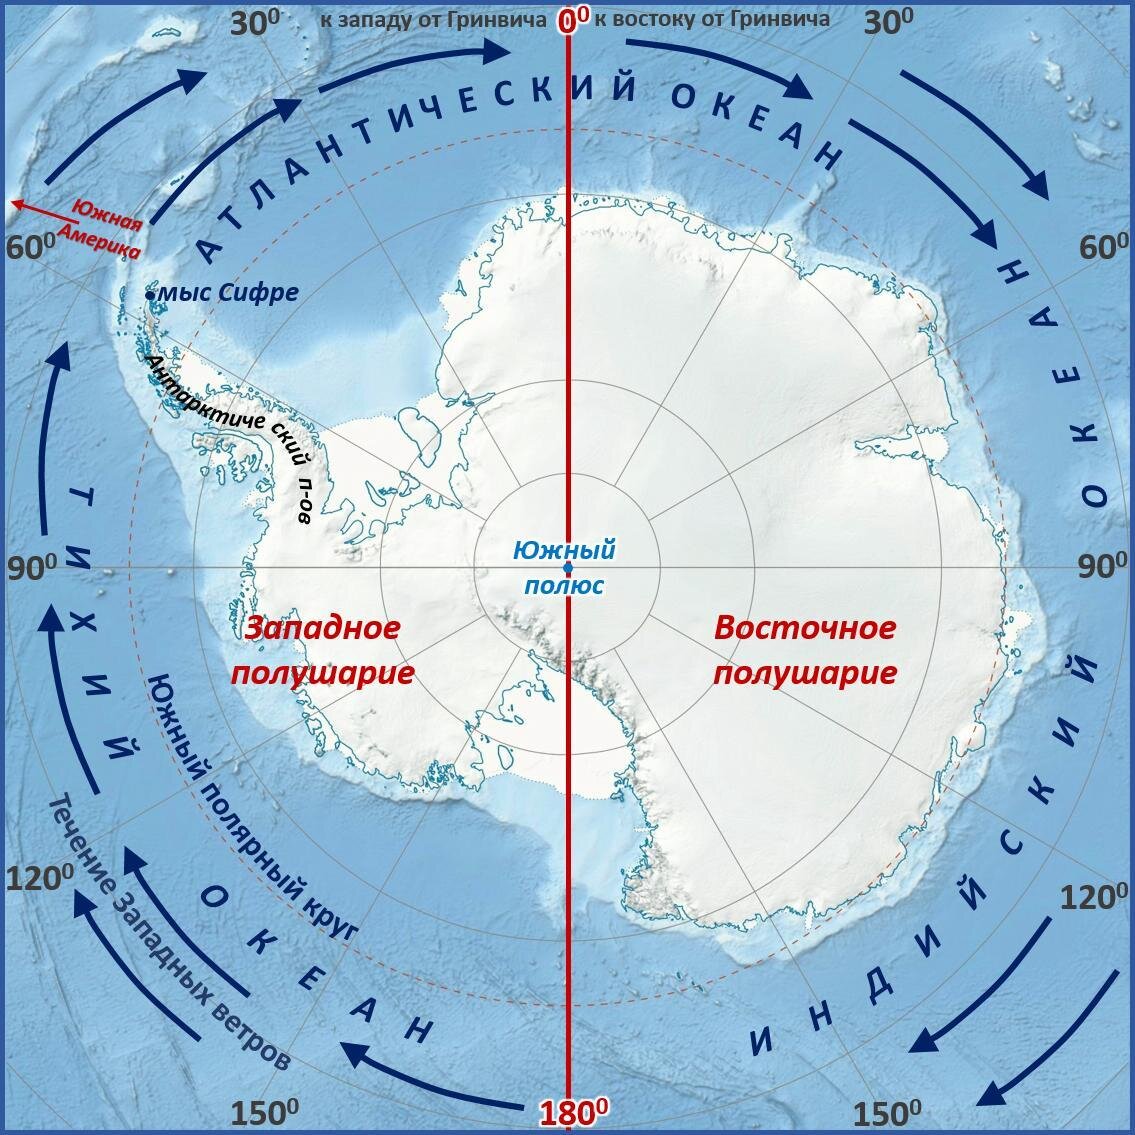 Крайняя западная точка тихого океана. Мыс Сифре на карте Антарктиды. Моря: Амундсена, Беллинсгаузена, Росса, Уэдделла.. Мыс Сифре Антарктида. Южный полюс на карте Антарктиды.